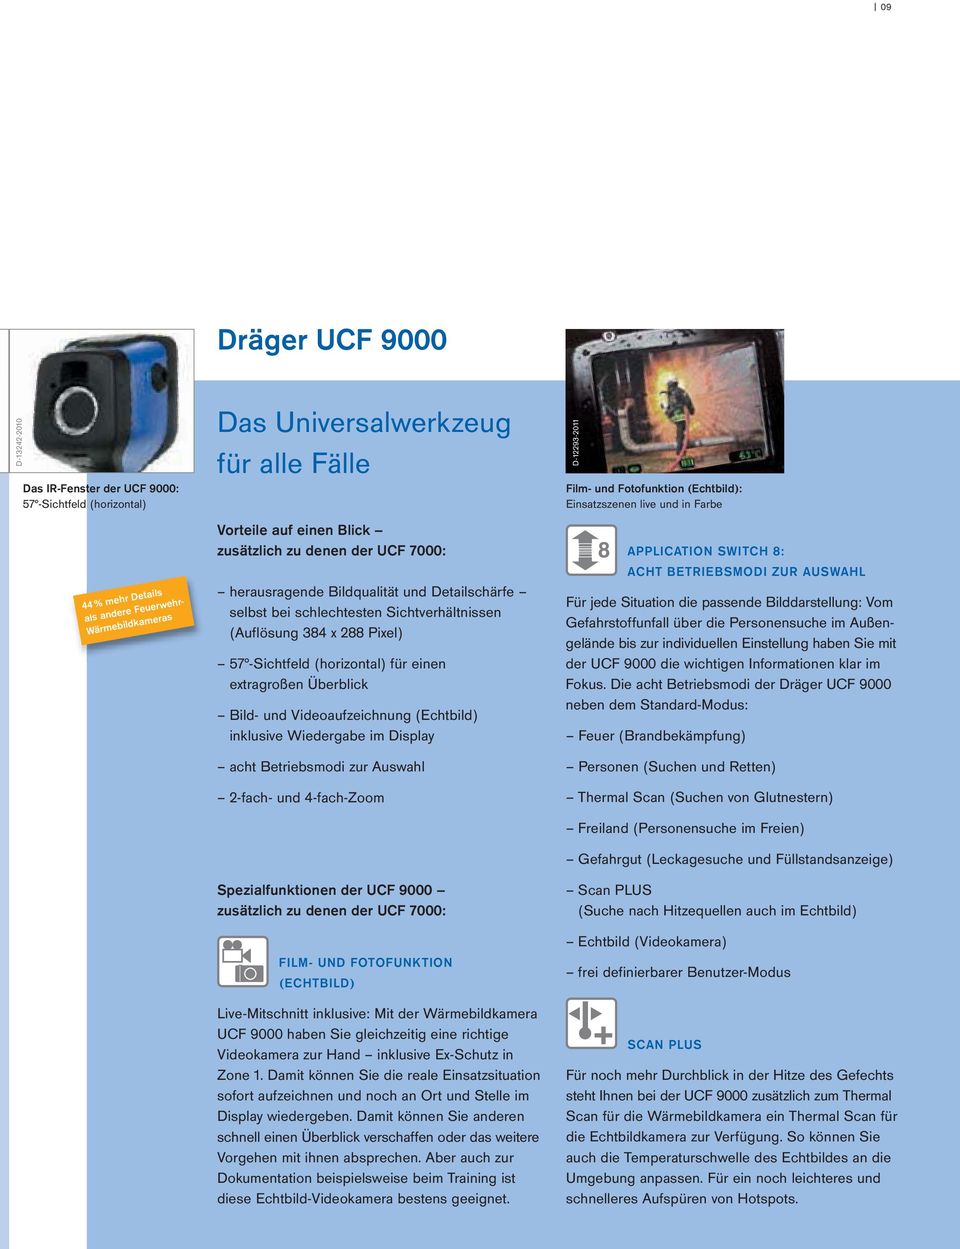 extragroßen Überblick Bild- und Videoaufzeichnung (Echtbild) inklusive Wiedergabe im Display acht Betriebsmodi zur Auswahl 2-fach- und 4-fach-Zoom Spezialfunktionen der UCF 9000 zusätzlich zu denen